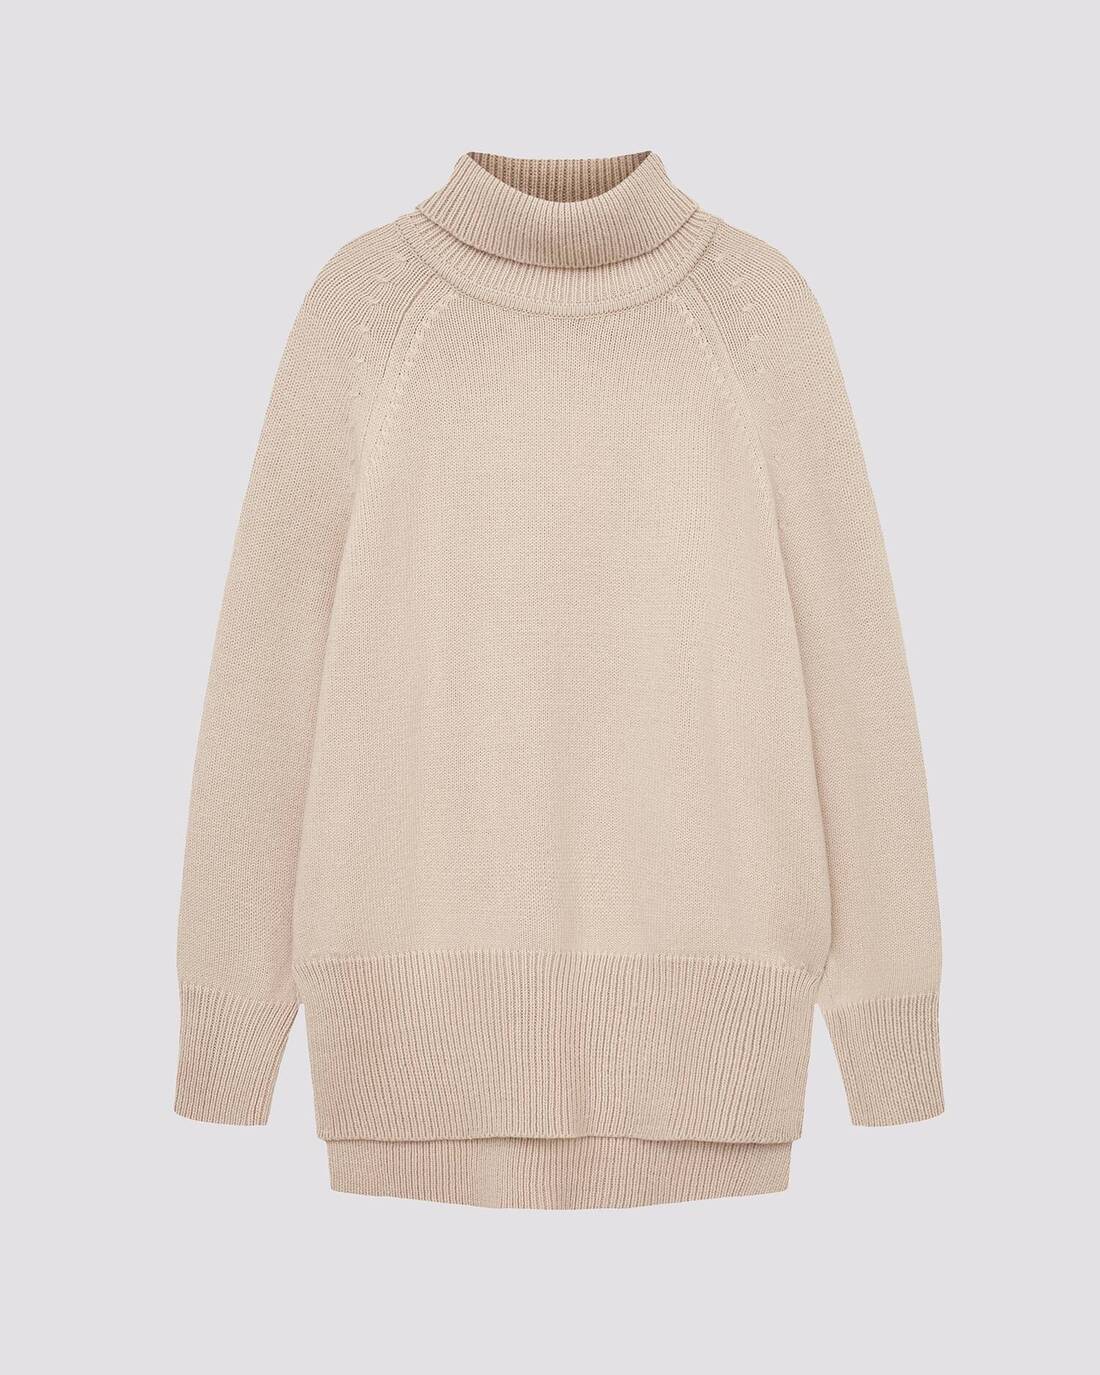 Voluminous sweater made of soft yarn